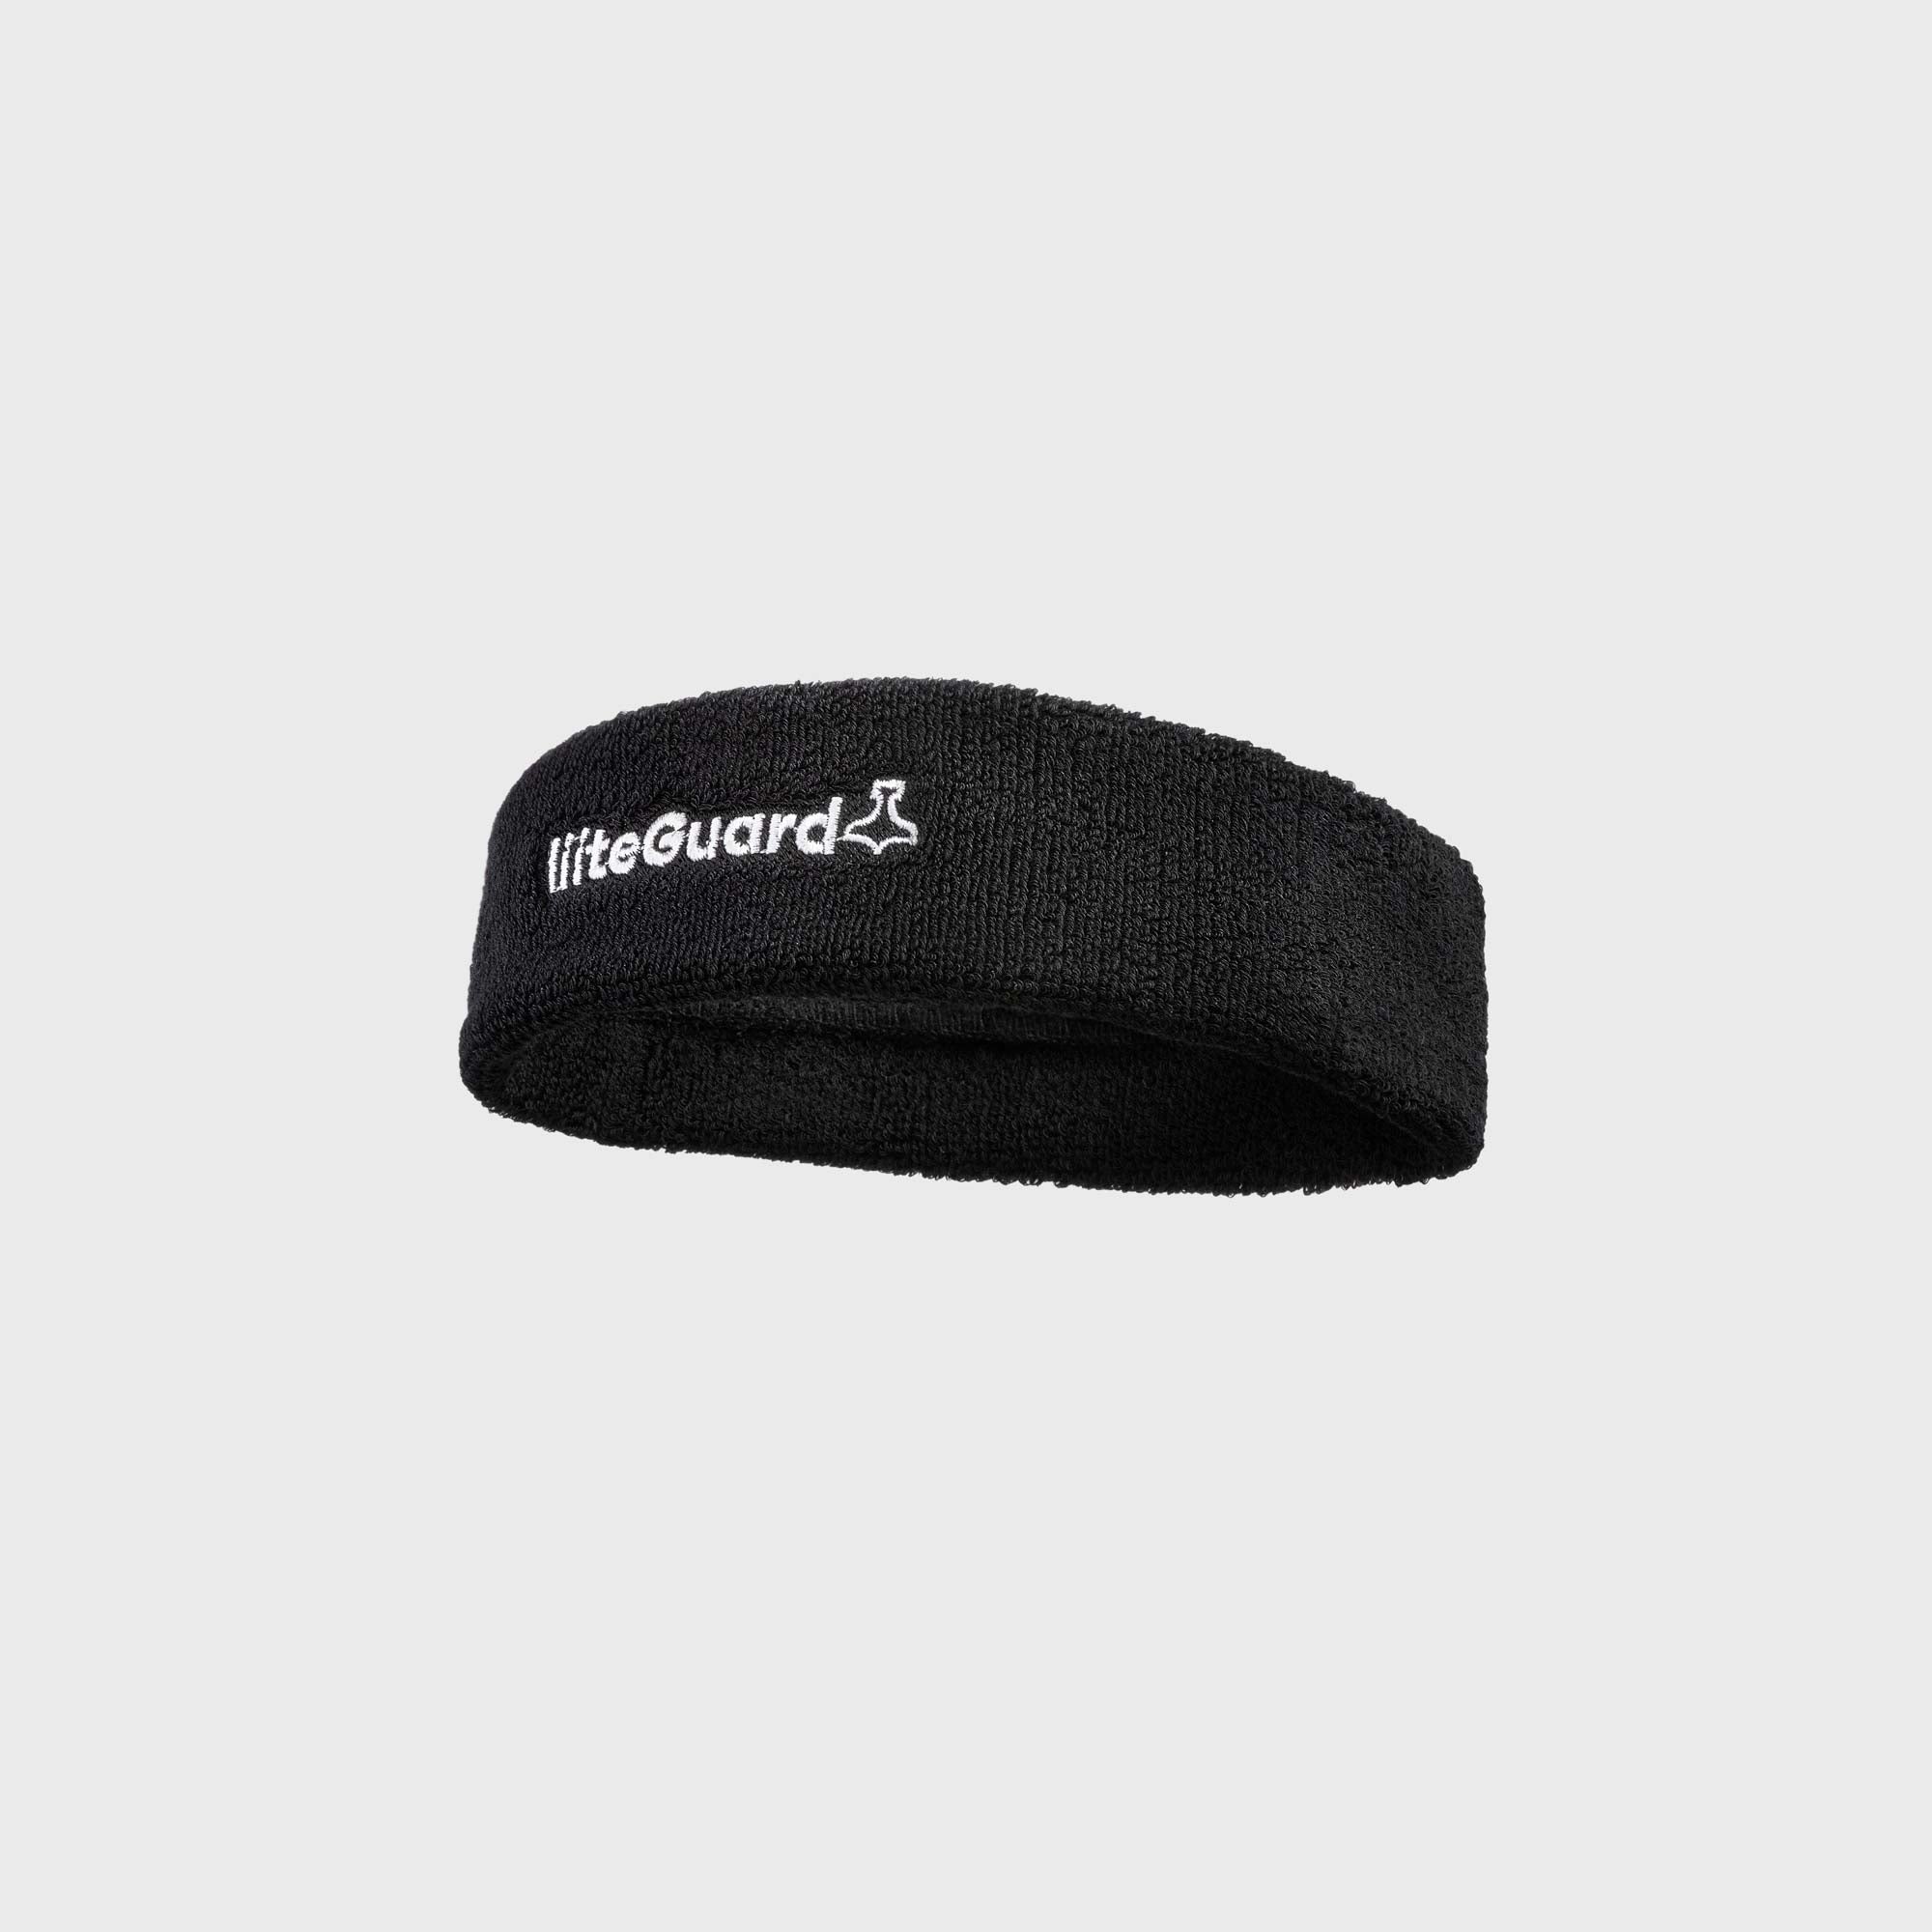 Liiteguard HEADBAND Headband Black